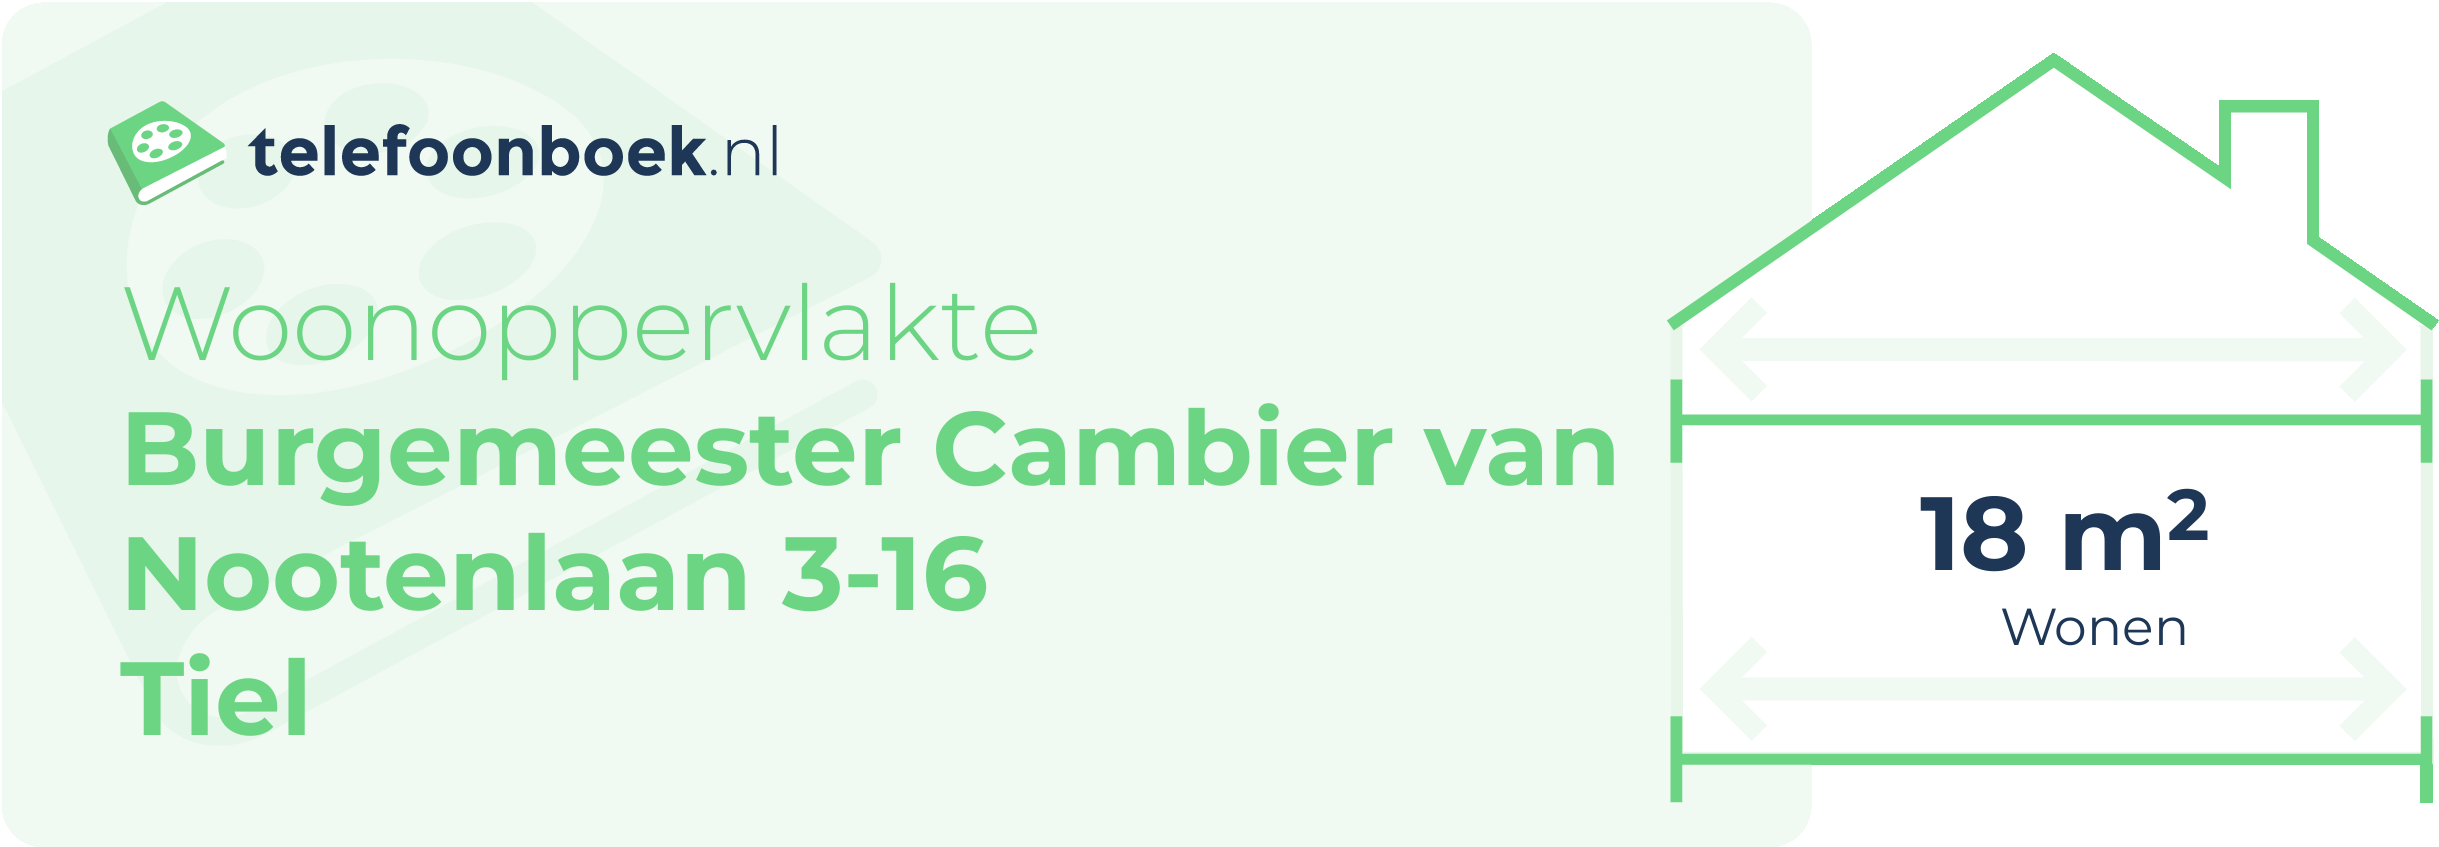 Woonoppervlakte Burgemeester Cambier Van Nootenlaan 3-16 Tiel